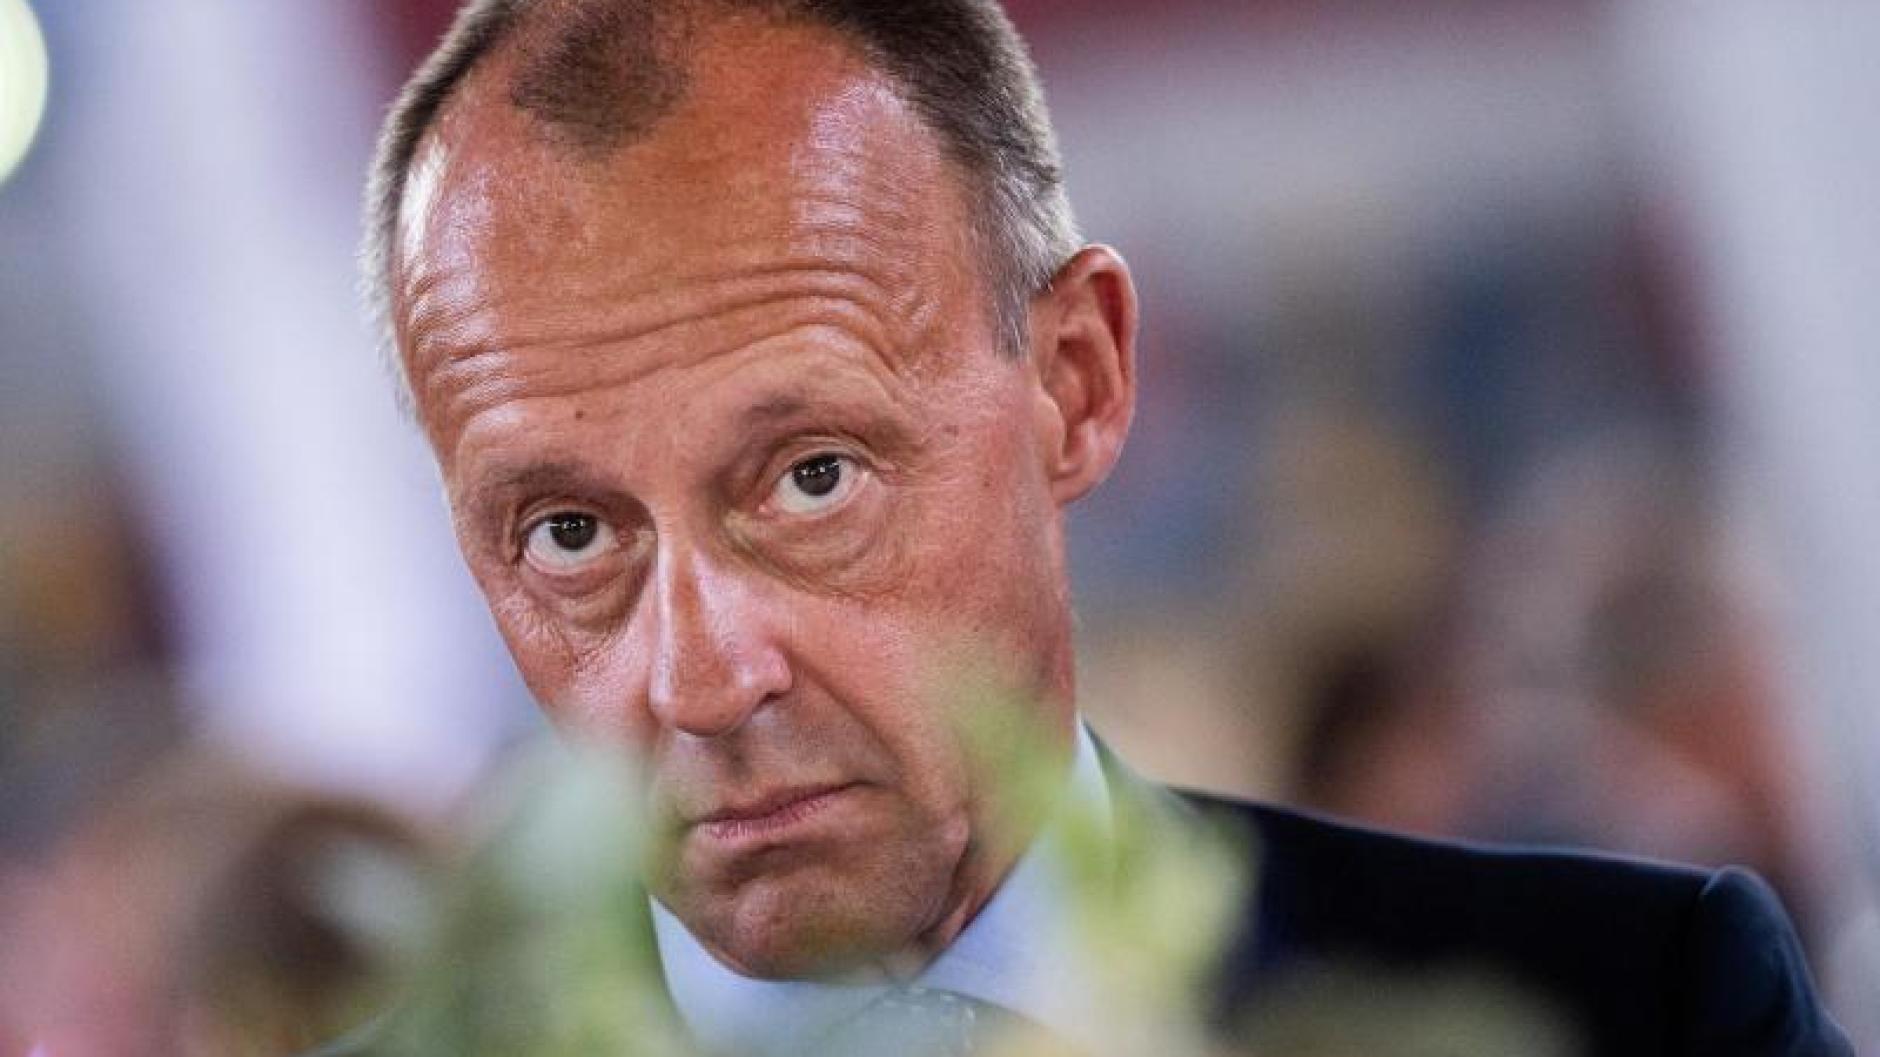 Kritik an CDU-Politiker: Olaf Scholz kritisiert Merz ...